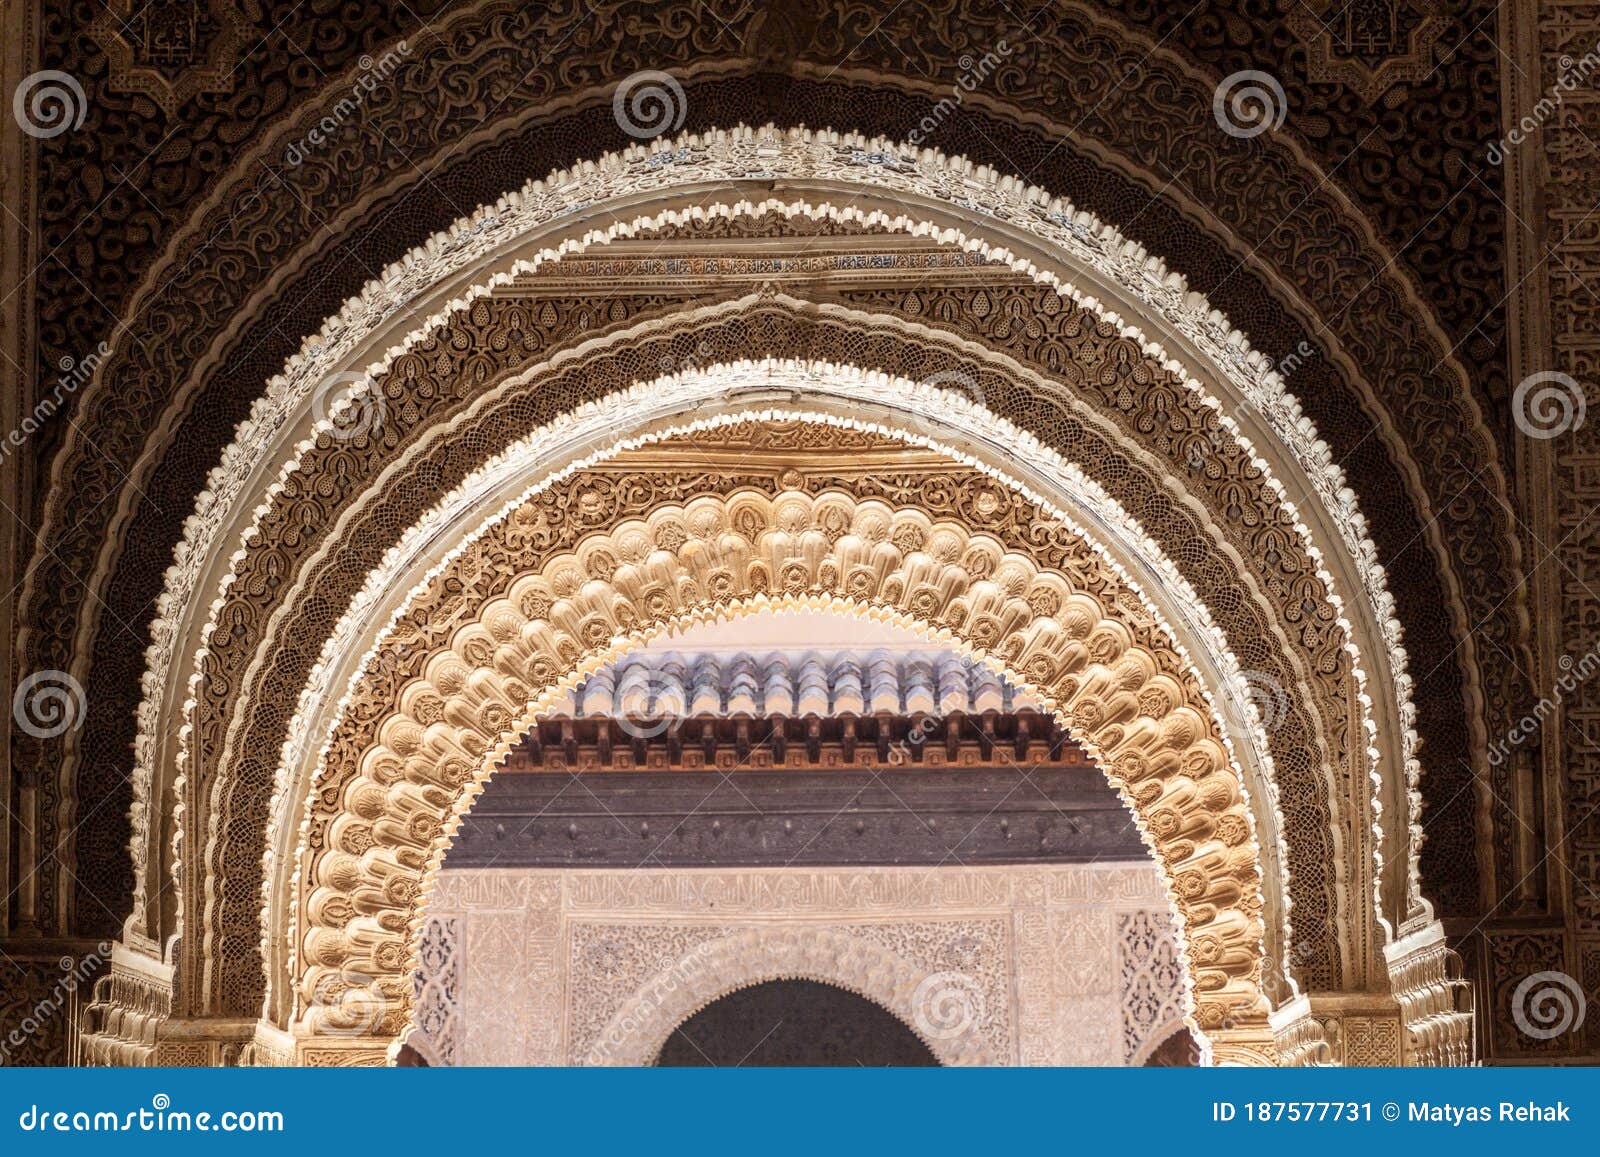 gate at nasrid palaces (palacios nazaries) at alhambra in granada, spa